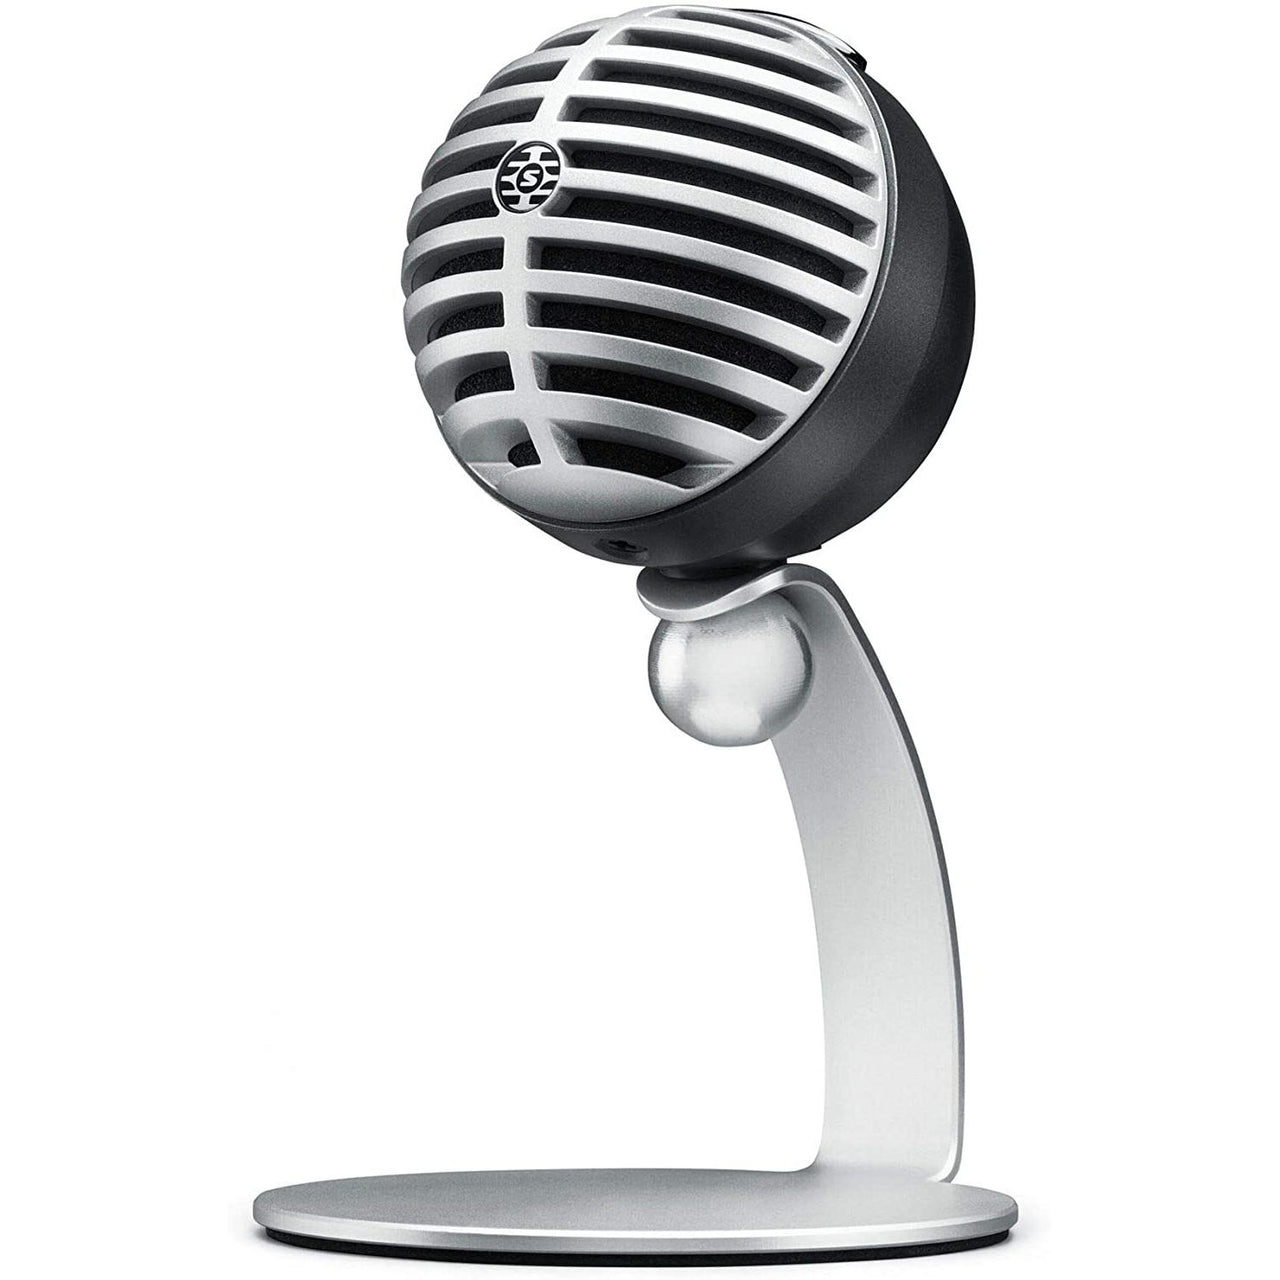 Microfono Shure De Condensador Digital, Mv5/A-Ltg